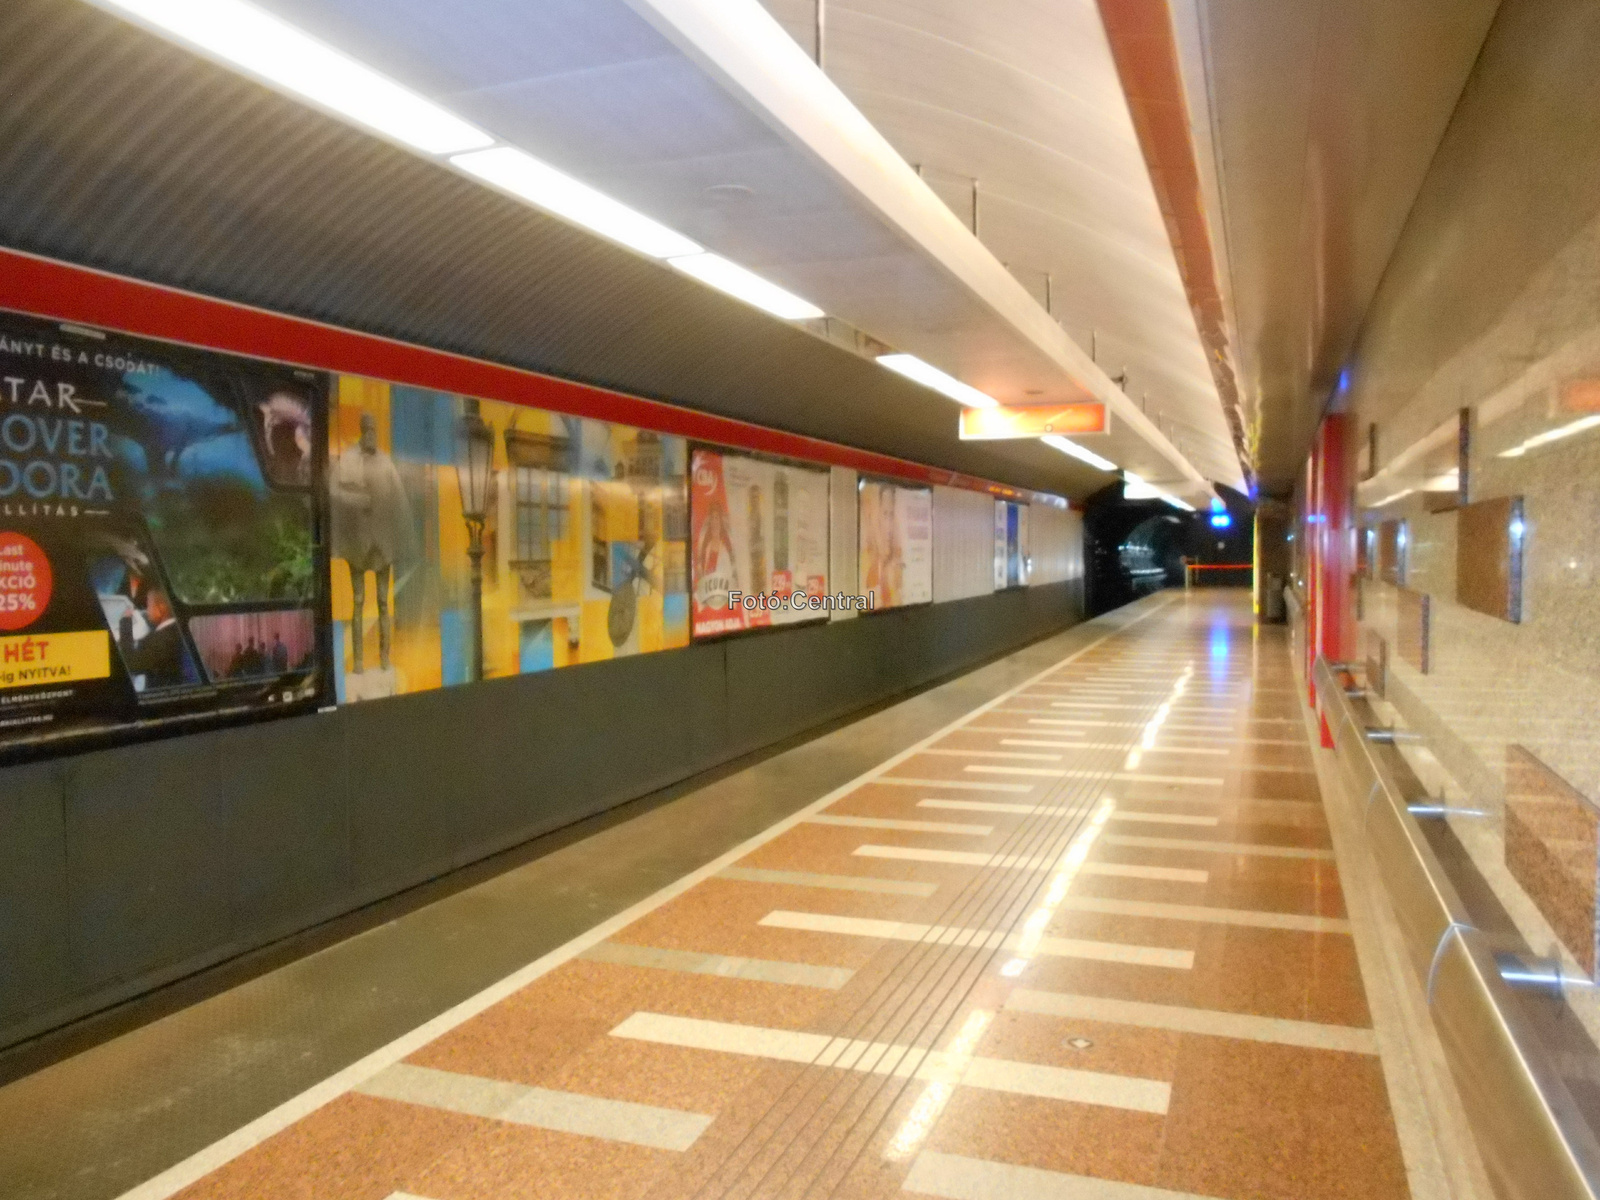 A Széll Kálmán téri metróállomás.DSCN6650